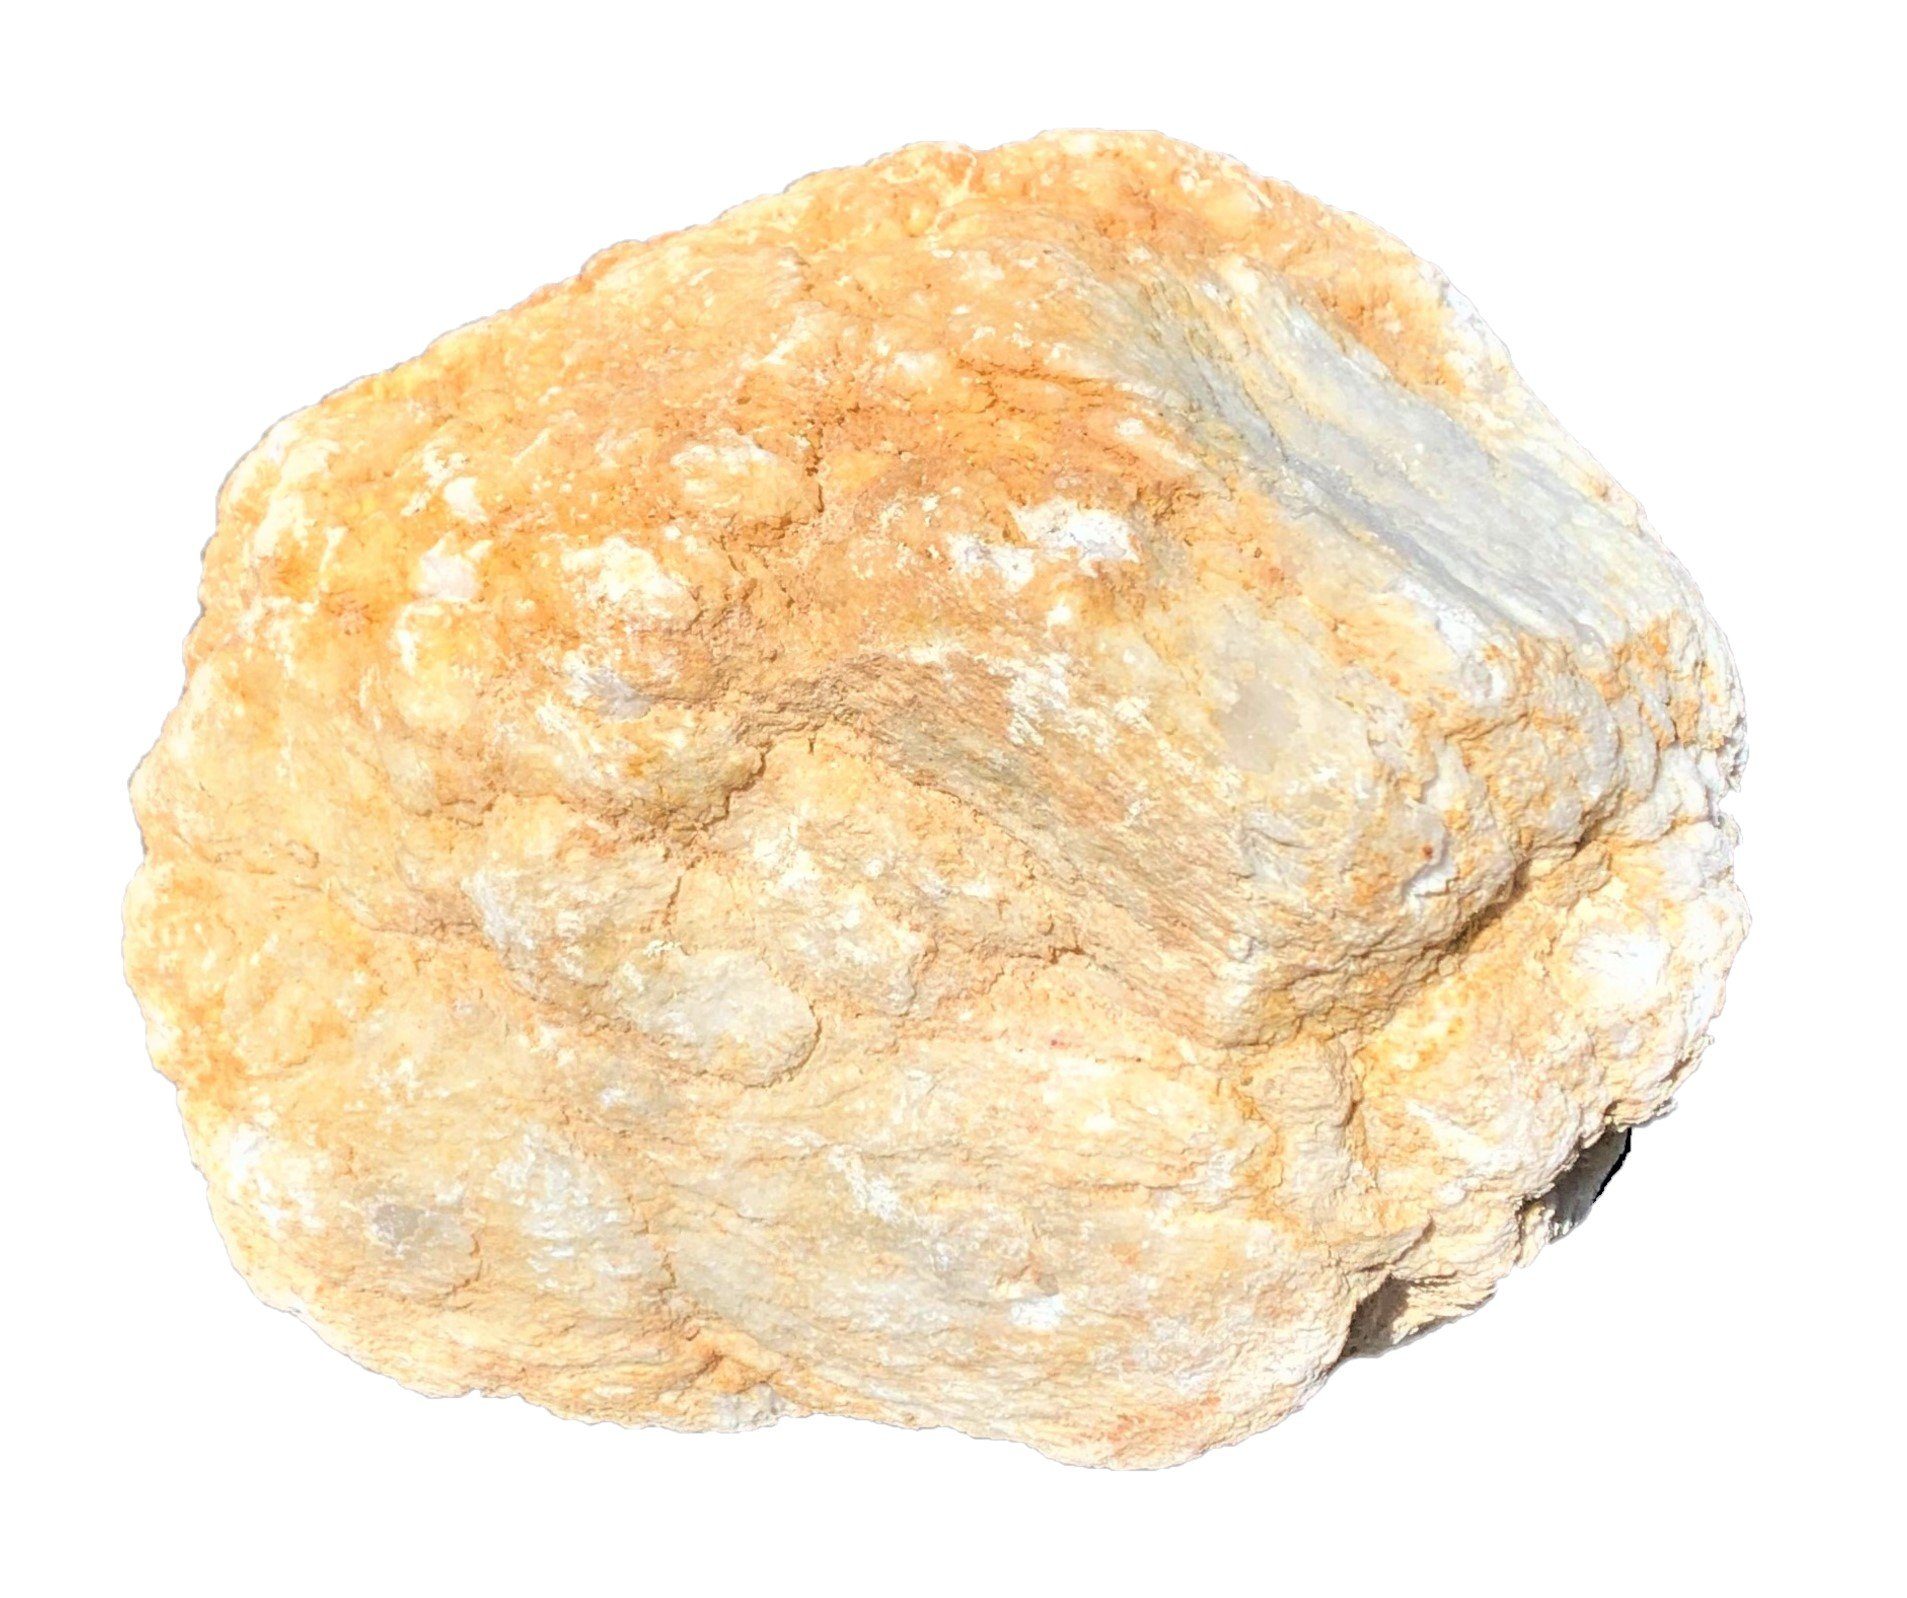 Steinfixx® Mineralstein Exclusive mächtige Kristallgeode zum selber aufbrechen, Partyspass, (Kristalldruse geschlossen zum aufbrechen, weiße Kristalle im inneren), grosse Knackgeode von 6-20 cm Durchmesser, Glücksdruse, break your own